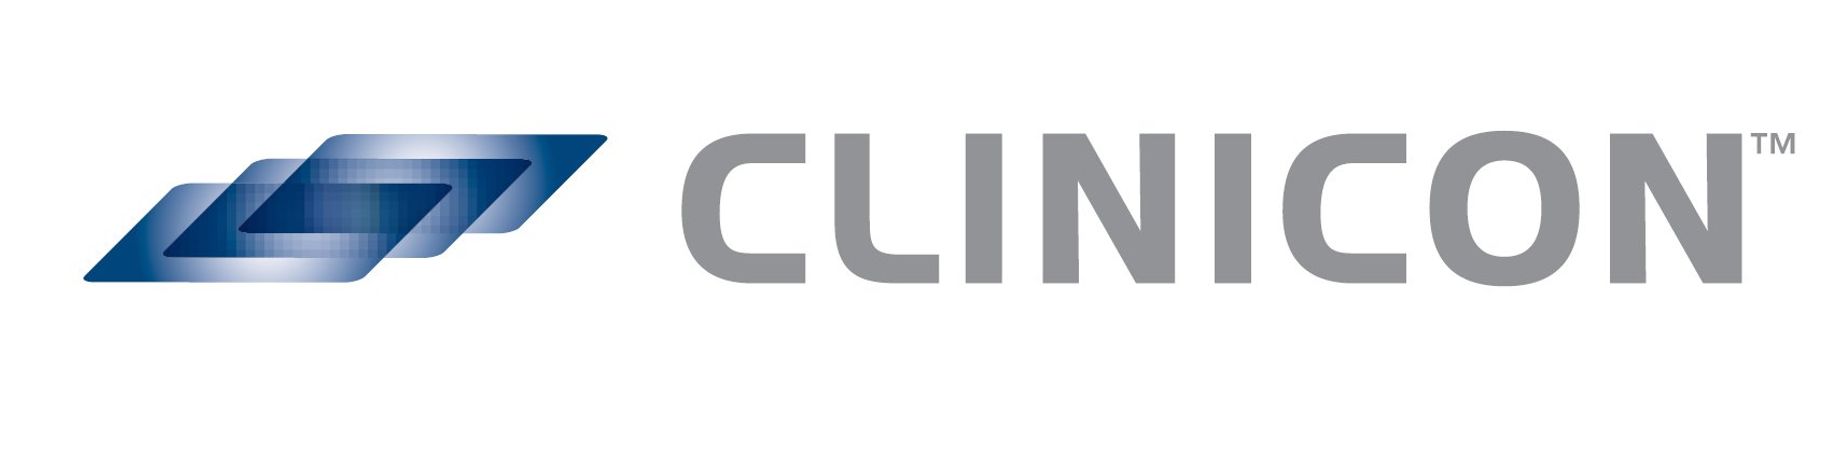 Clinicon - Model PureBeam - Delivery System